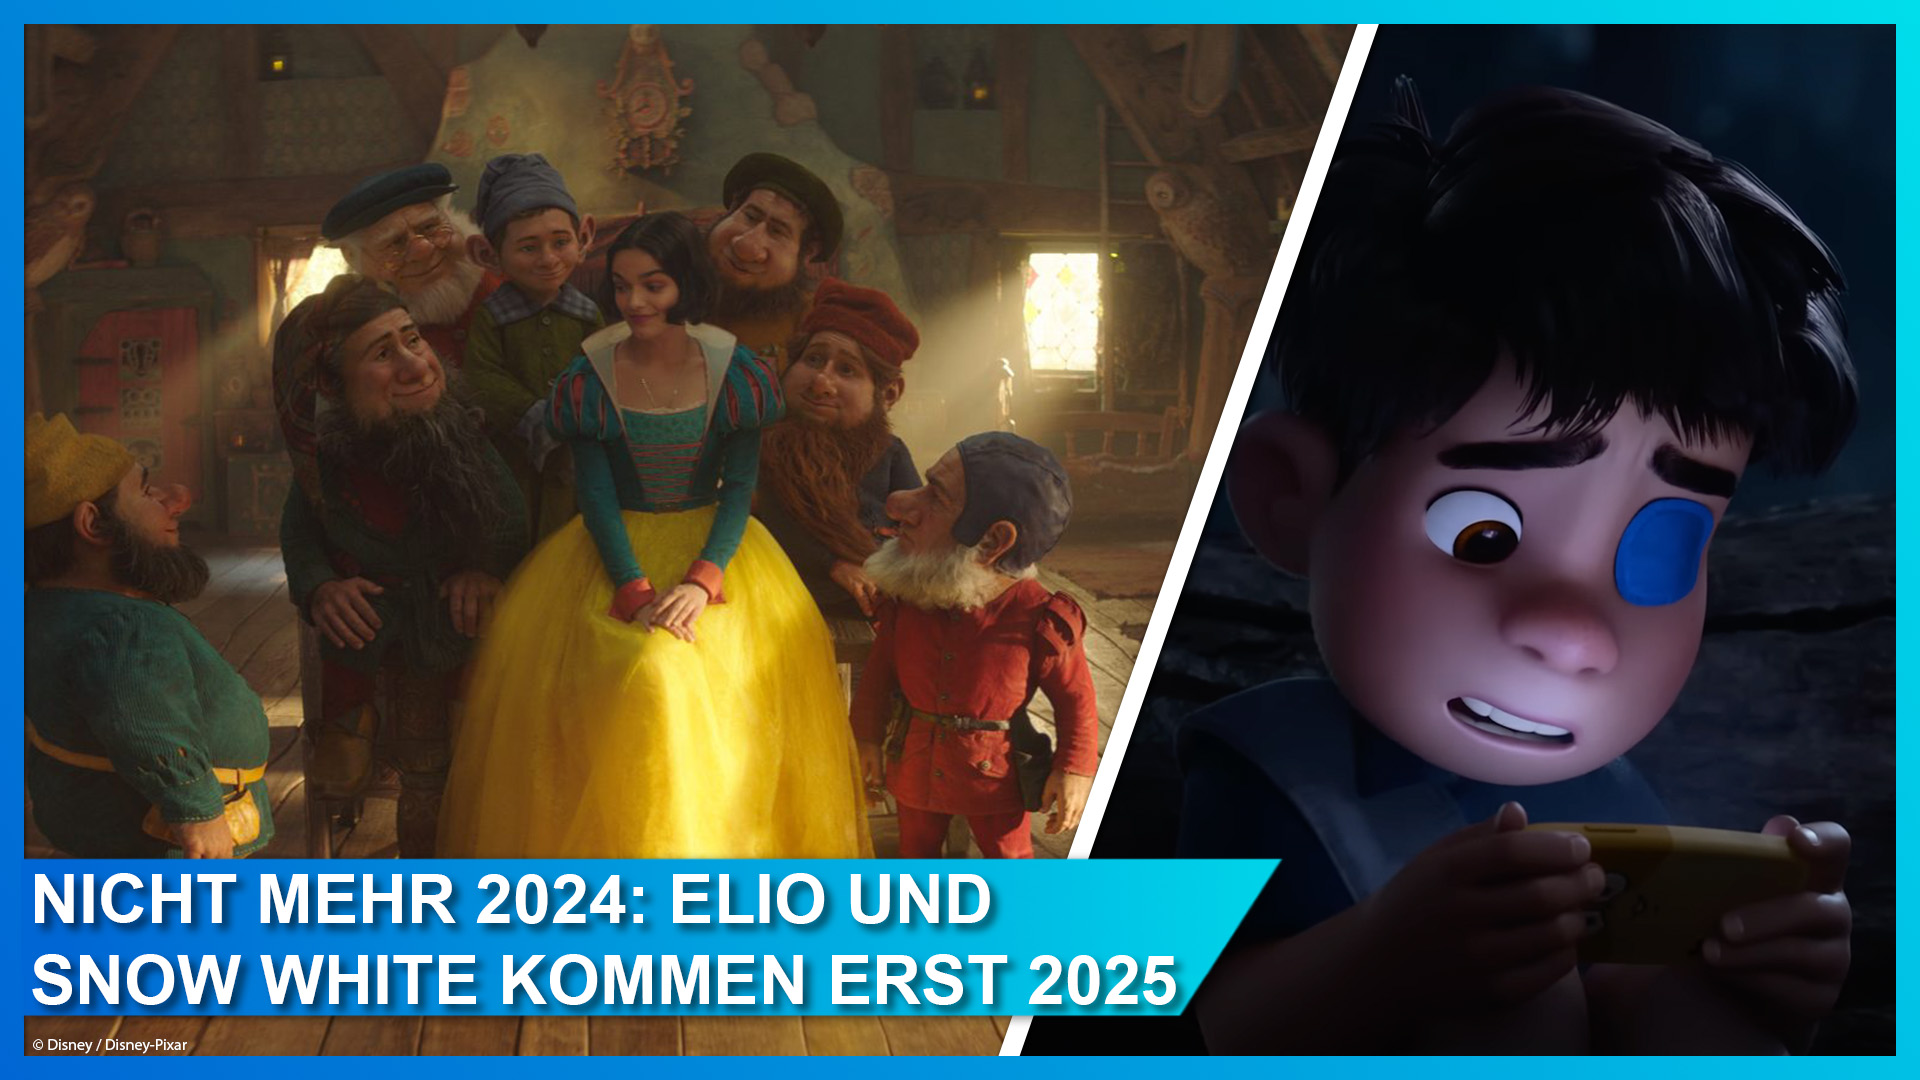 Snow White und Elio von Disney und Pixar kommen statt 2024 nun erst 2025 in die Kinos